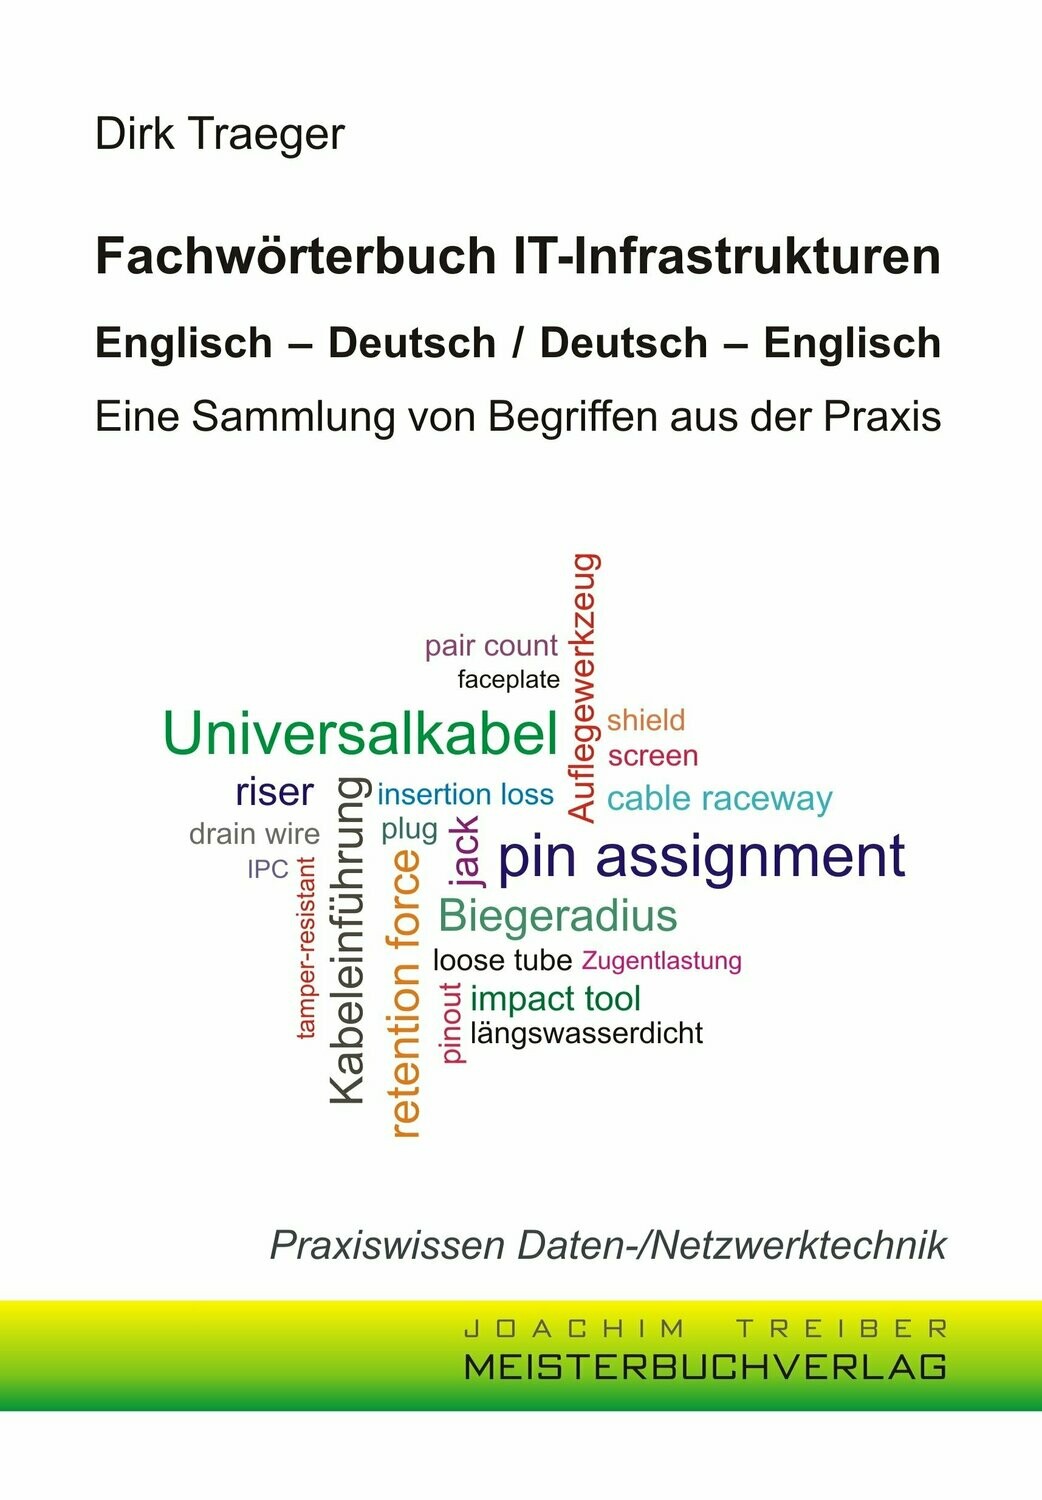 Fachwörterbuch IT-Infrastrukturen
Englisch - Deutsch / Deutsch - Englisch